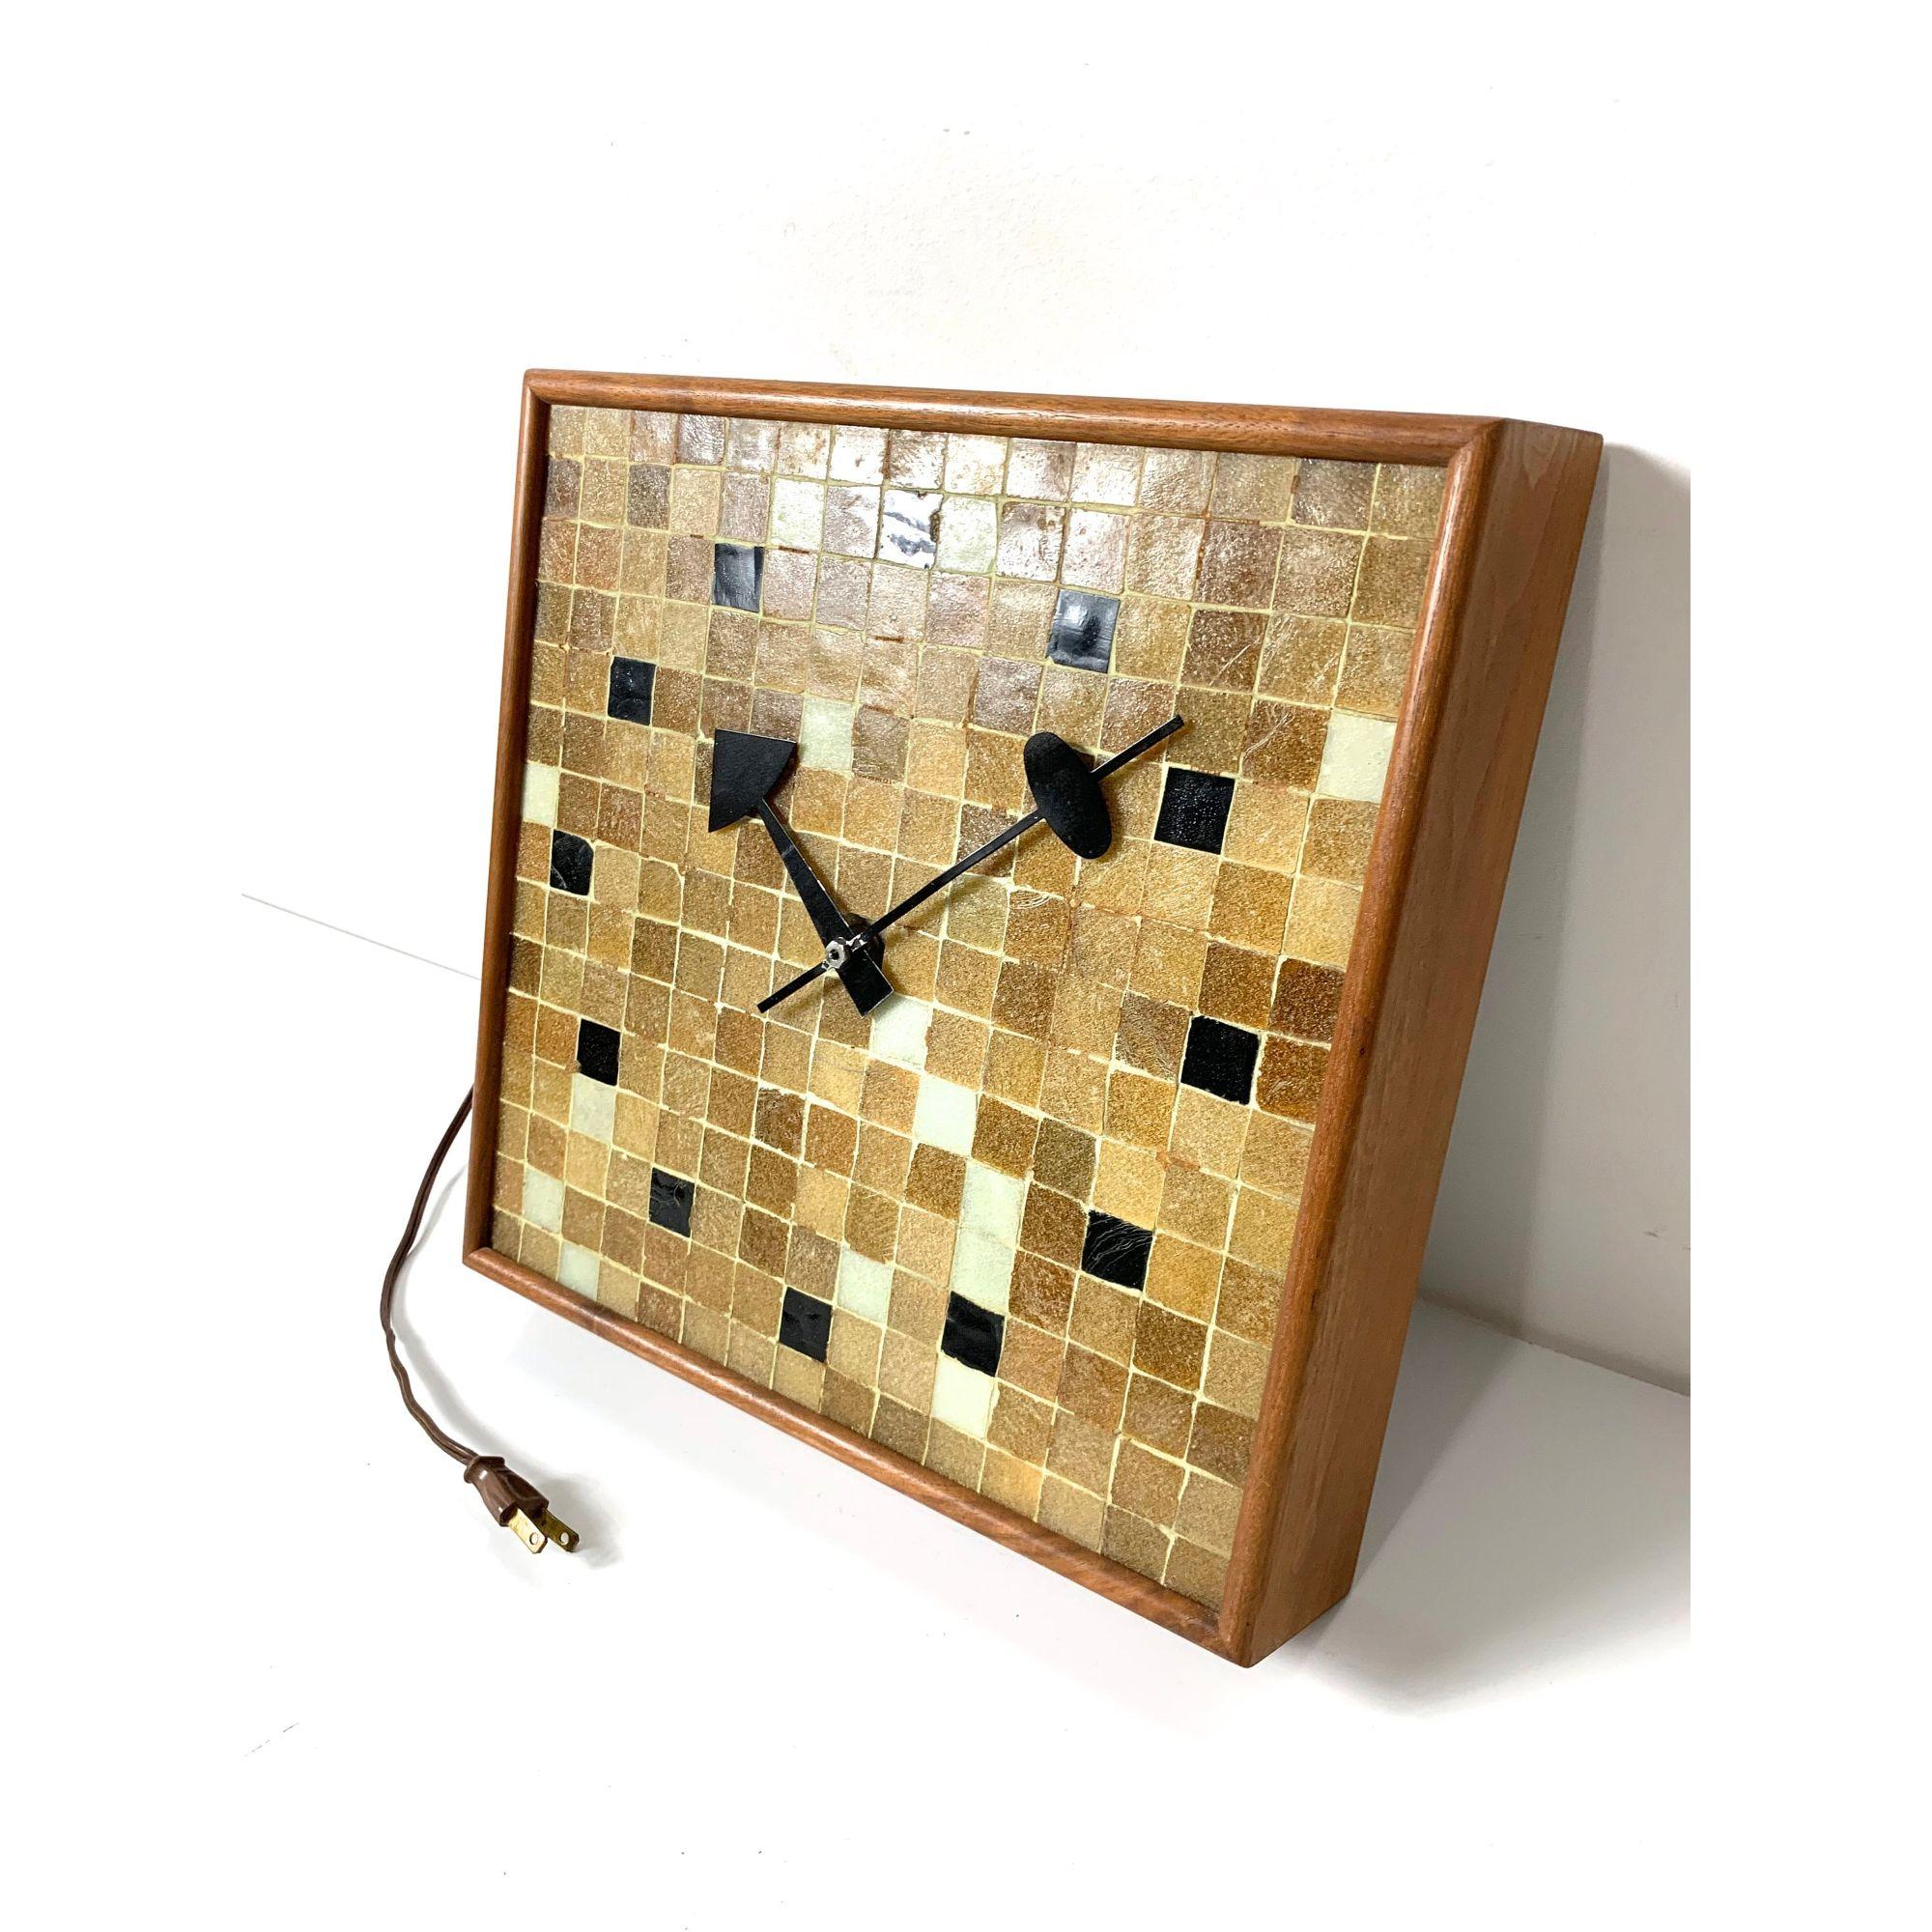 Rare George Nelson And Associates Mosaic Tile Wall Clock (horloge murale en mosaïque) 

Conçue par Irving Harper pour George Nelson and Associates et produite par Howard Miller.
Modèle 2232 
1957
Cadre en noyer avec face en mosaïque de verre et